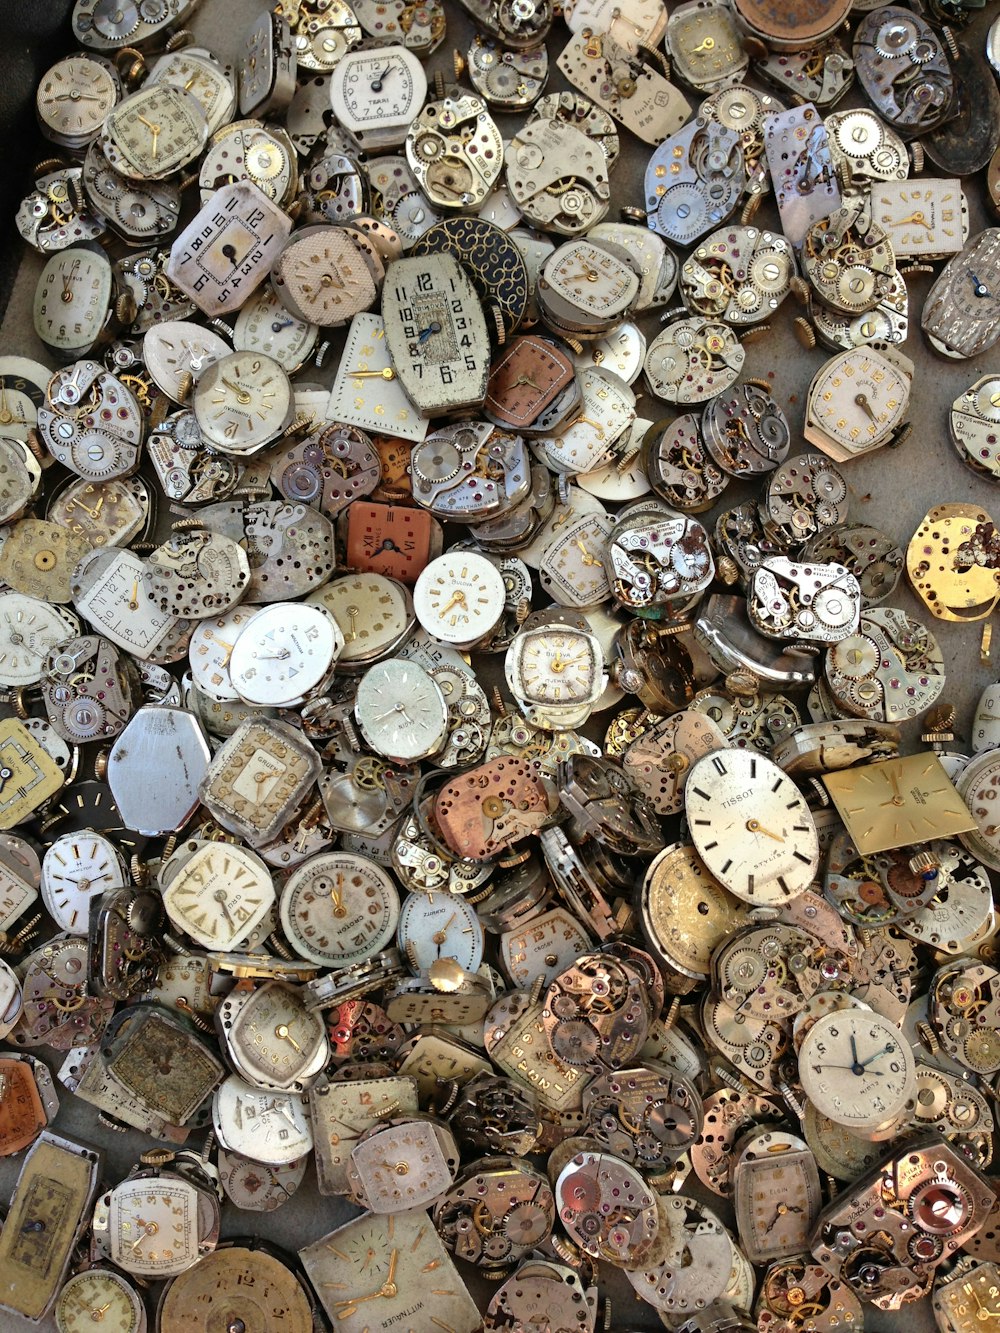 Lote de relojes vintage marrón y blanco